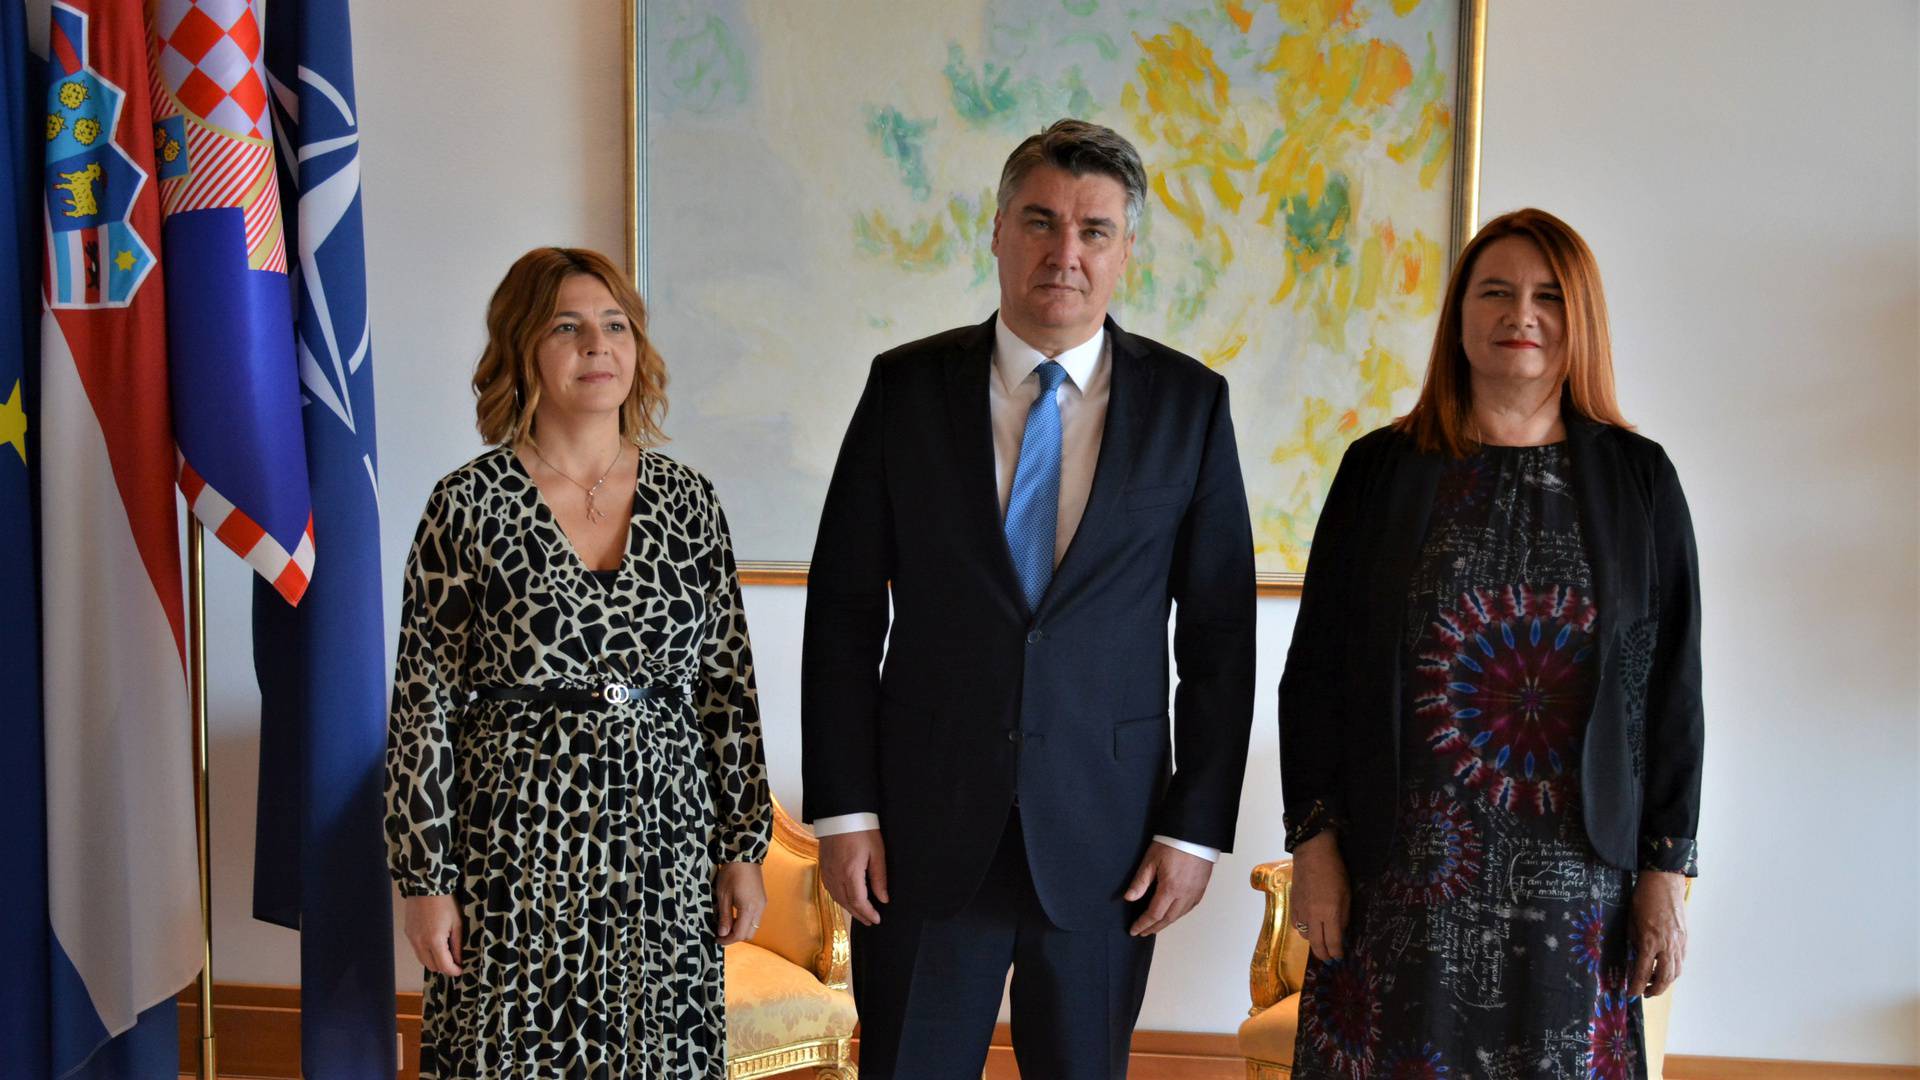 Predsjednik Milanović podržao je inicijativu 'Pravo svakog djeteta na školski obrok'